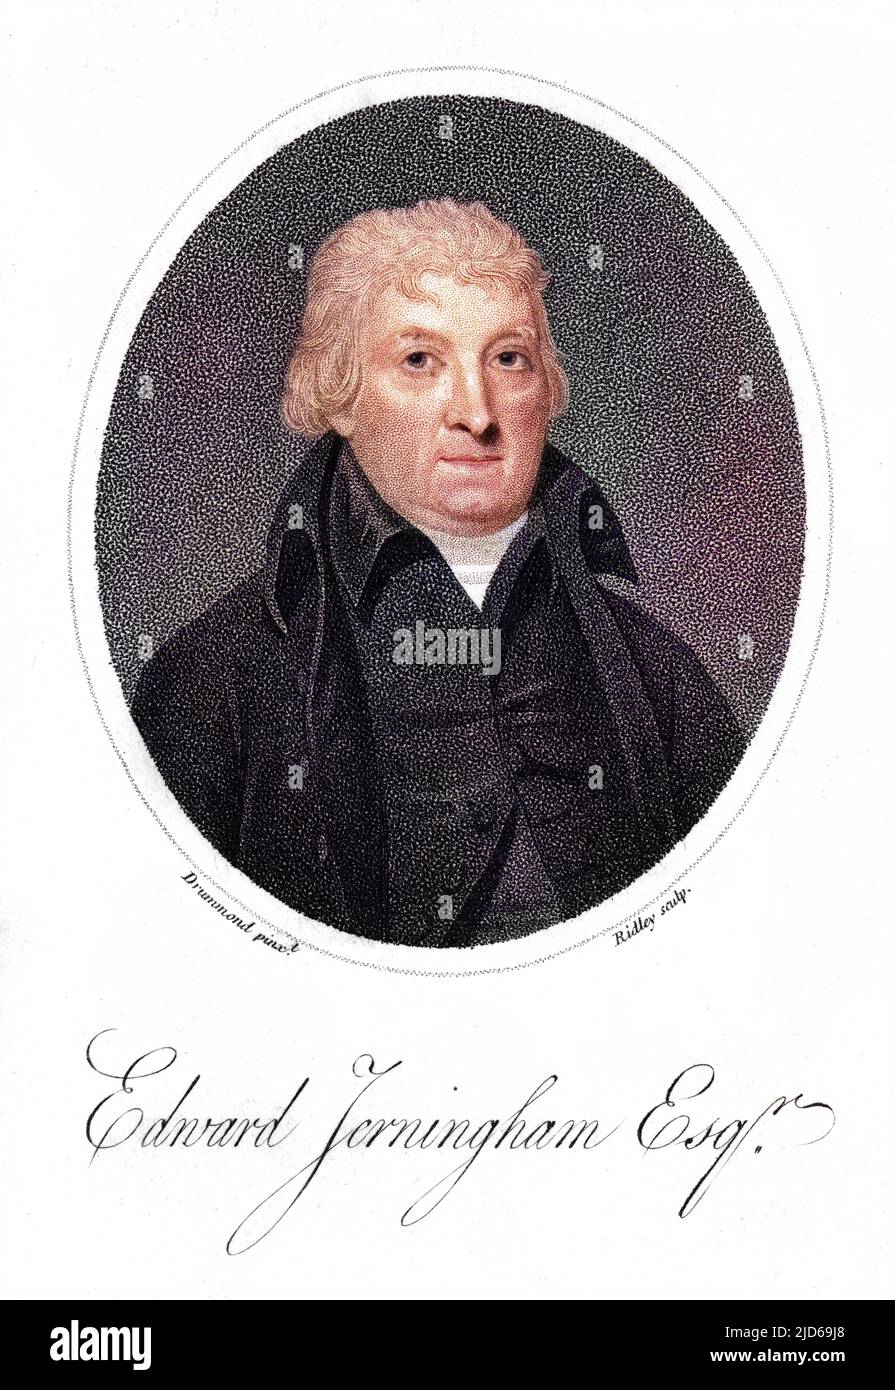 EDWARD JERNINGHAM Schriftsteller der Poesie Colorized Version von : 10161860 Datum: 1727 - 1812 Stockfoto